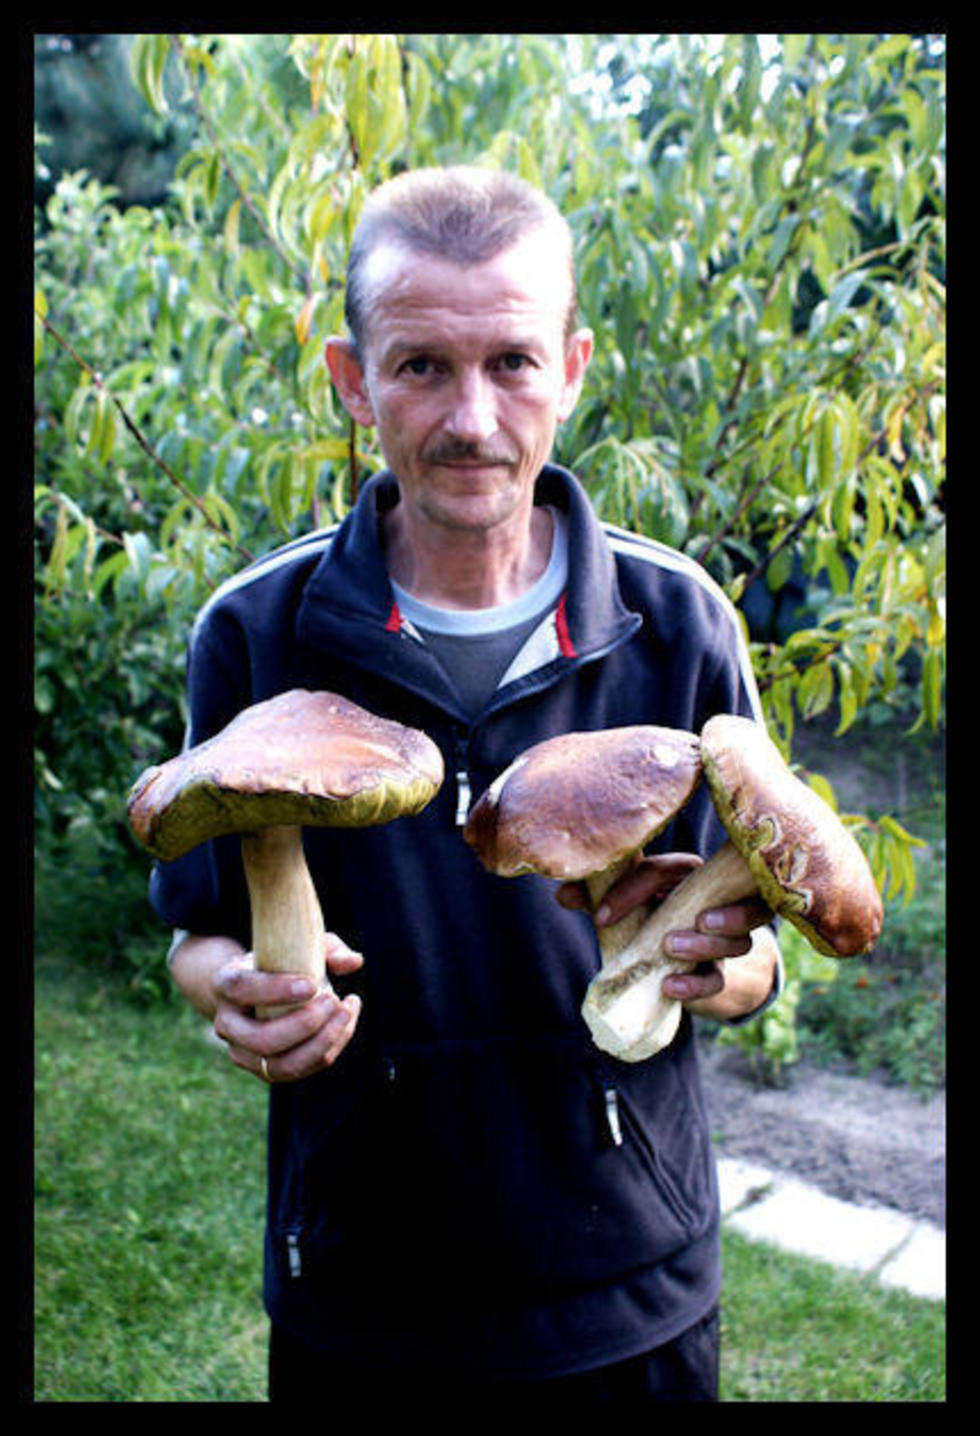  Na zdjeciu mój tata Grzegorz z grzybami ze zbiorów w tym roku.